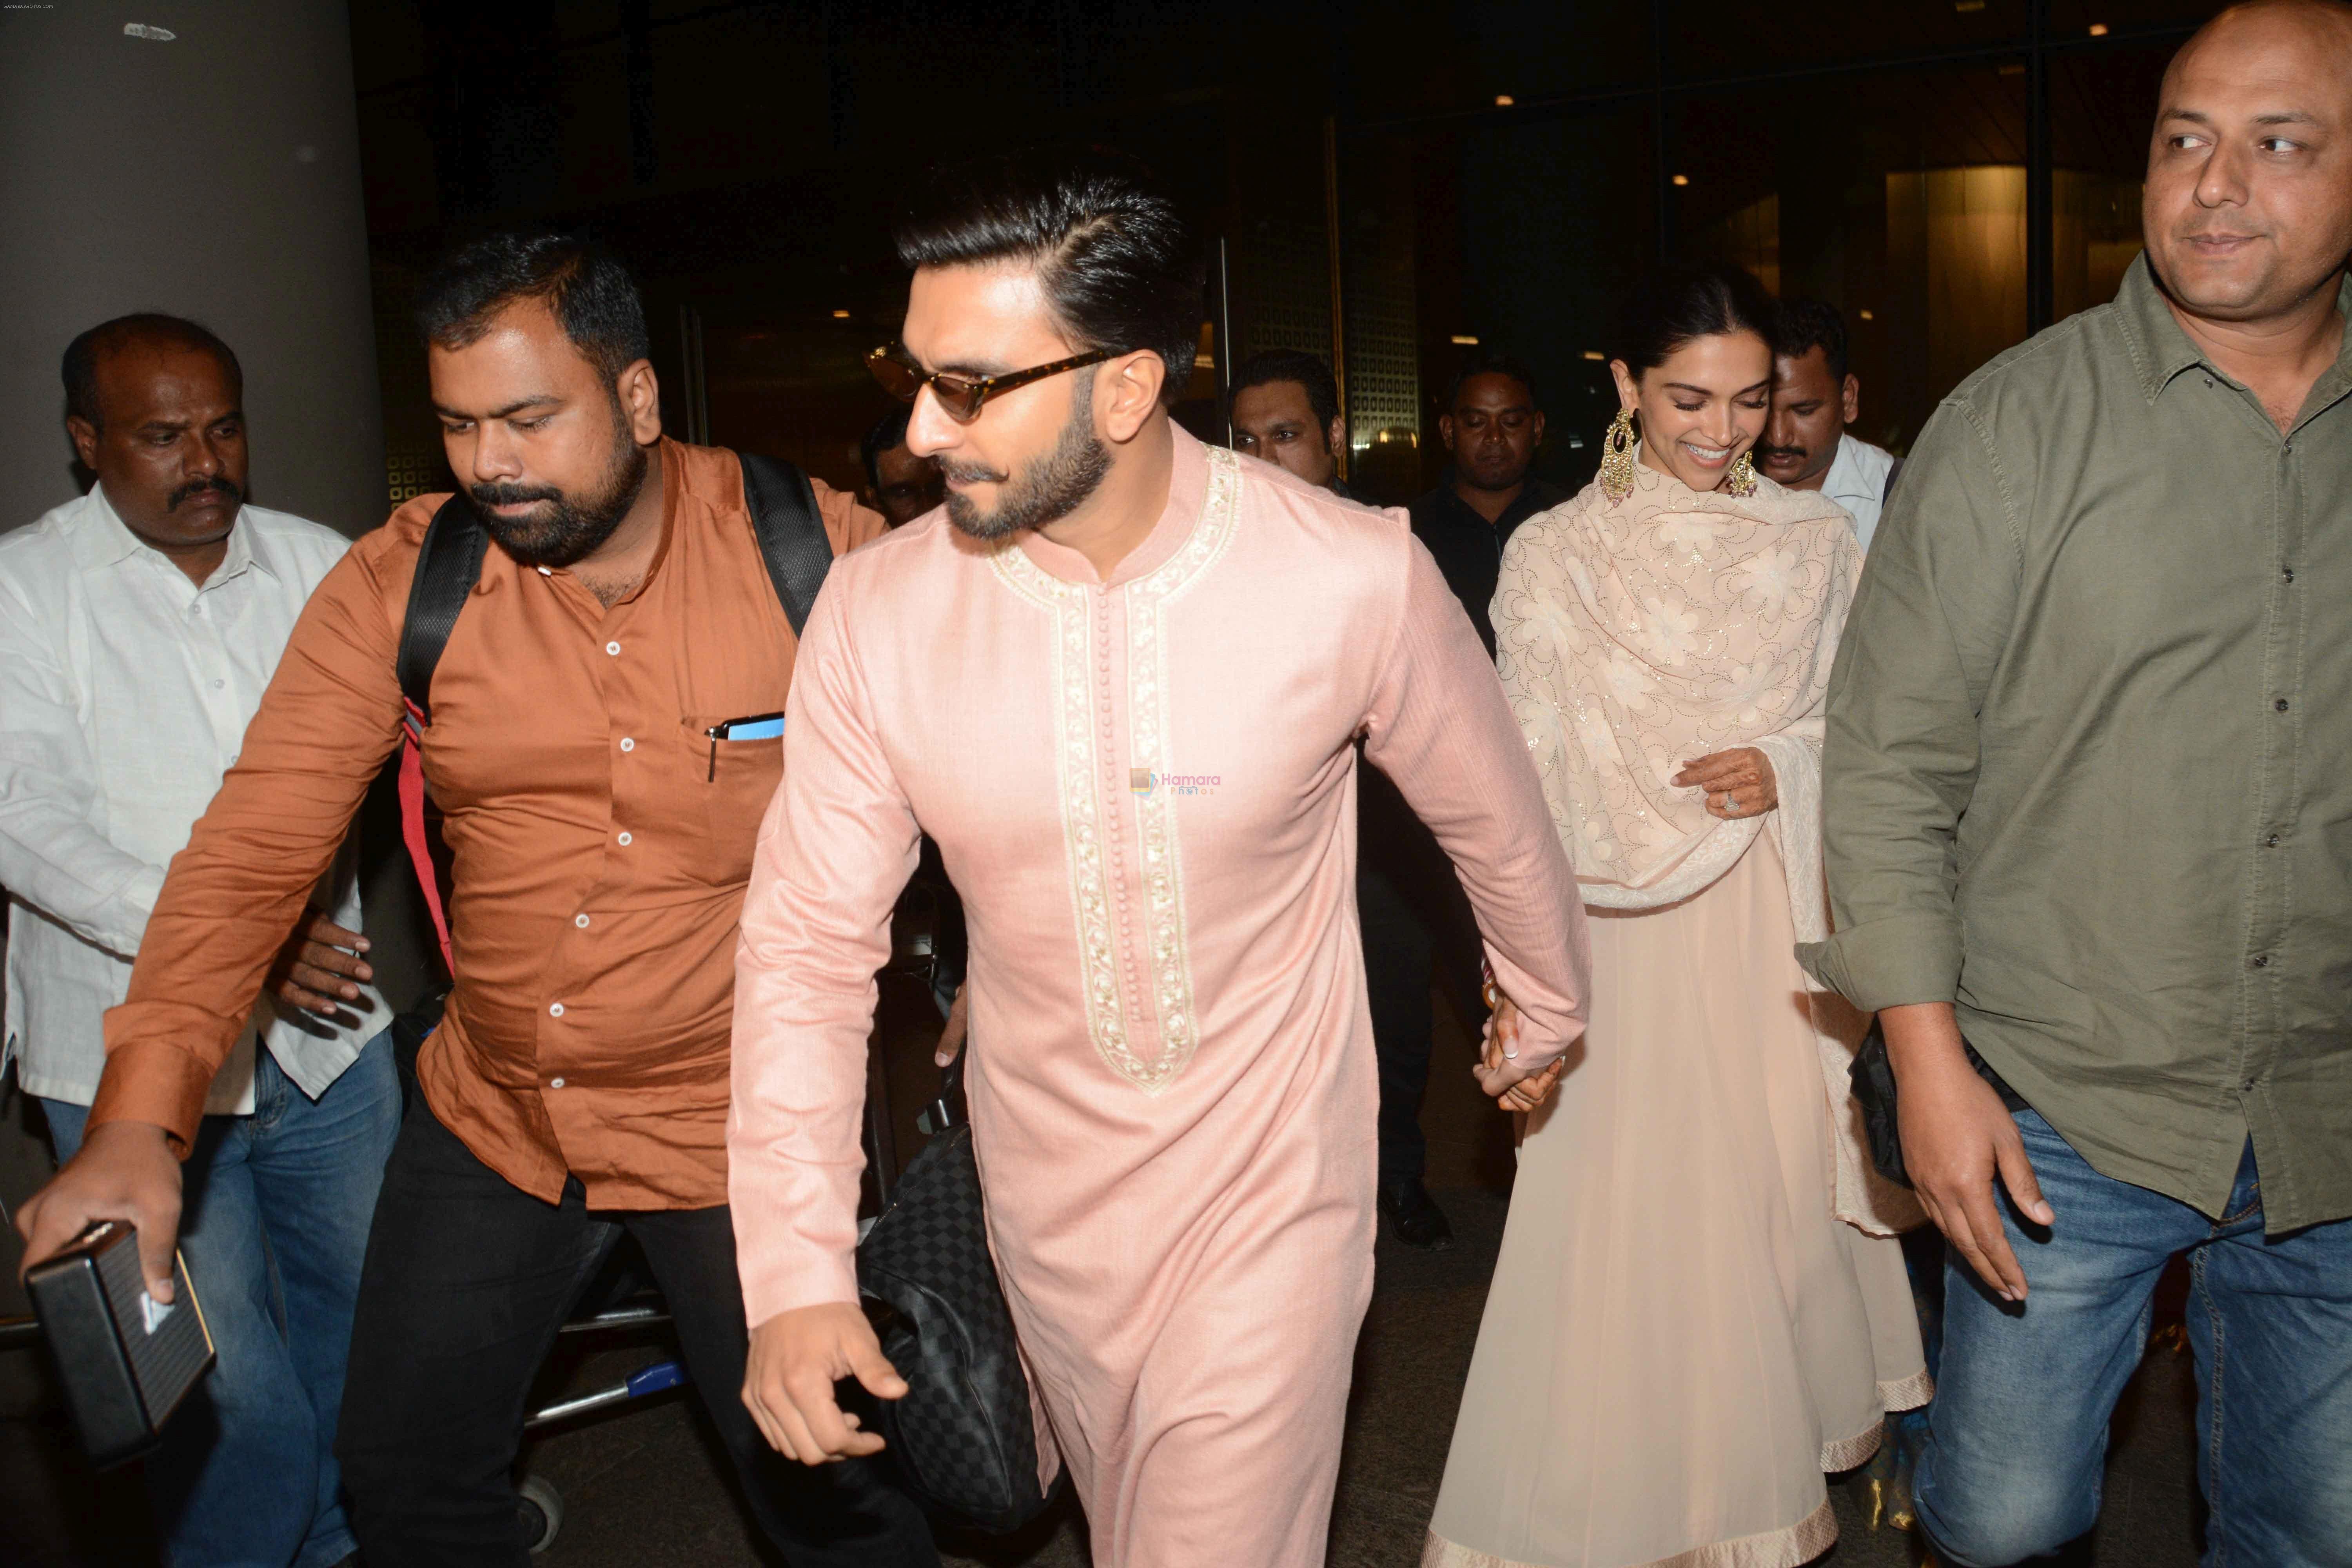 Ranveer Singh with his wife Deepika Padukone was spotted at International Airport, Andheri in Mumbai on 22nd Nov 2018